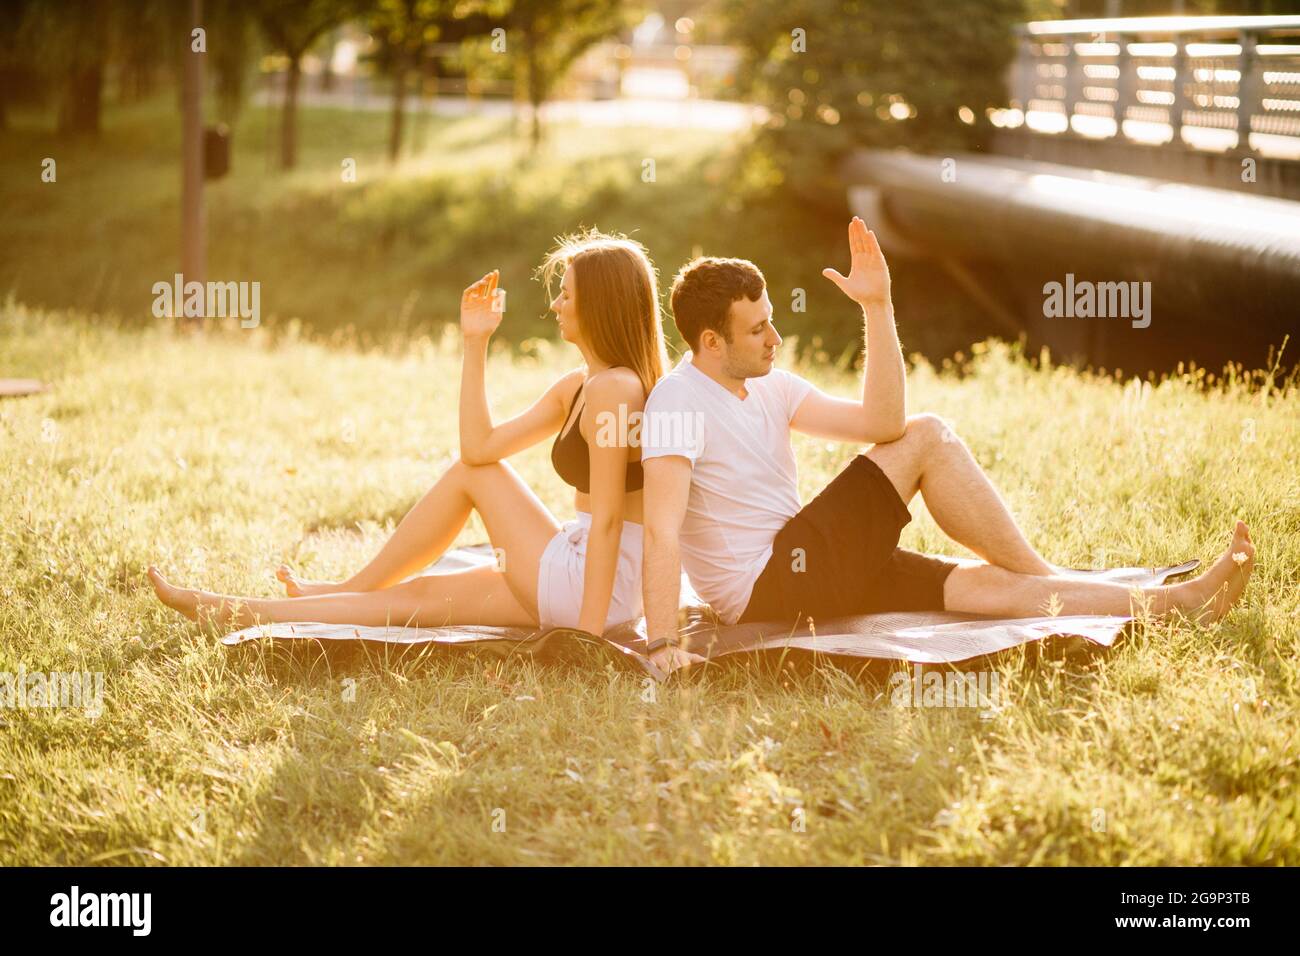 Junge schlanke Frau persönliches Stretching-Training, Sport Lifestyle fof paar in der Stadt, gesunde Lebensweise Stockfoto